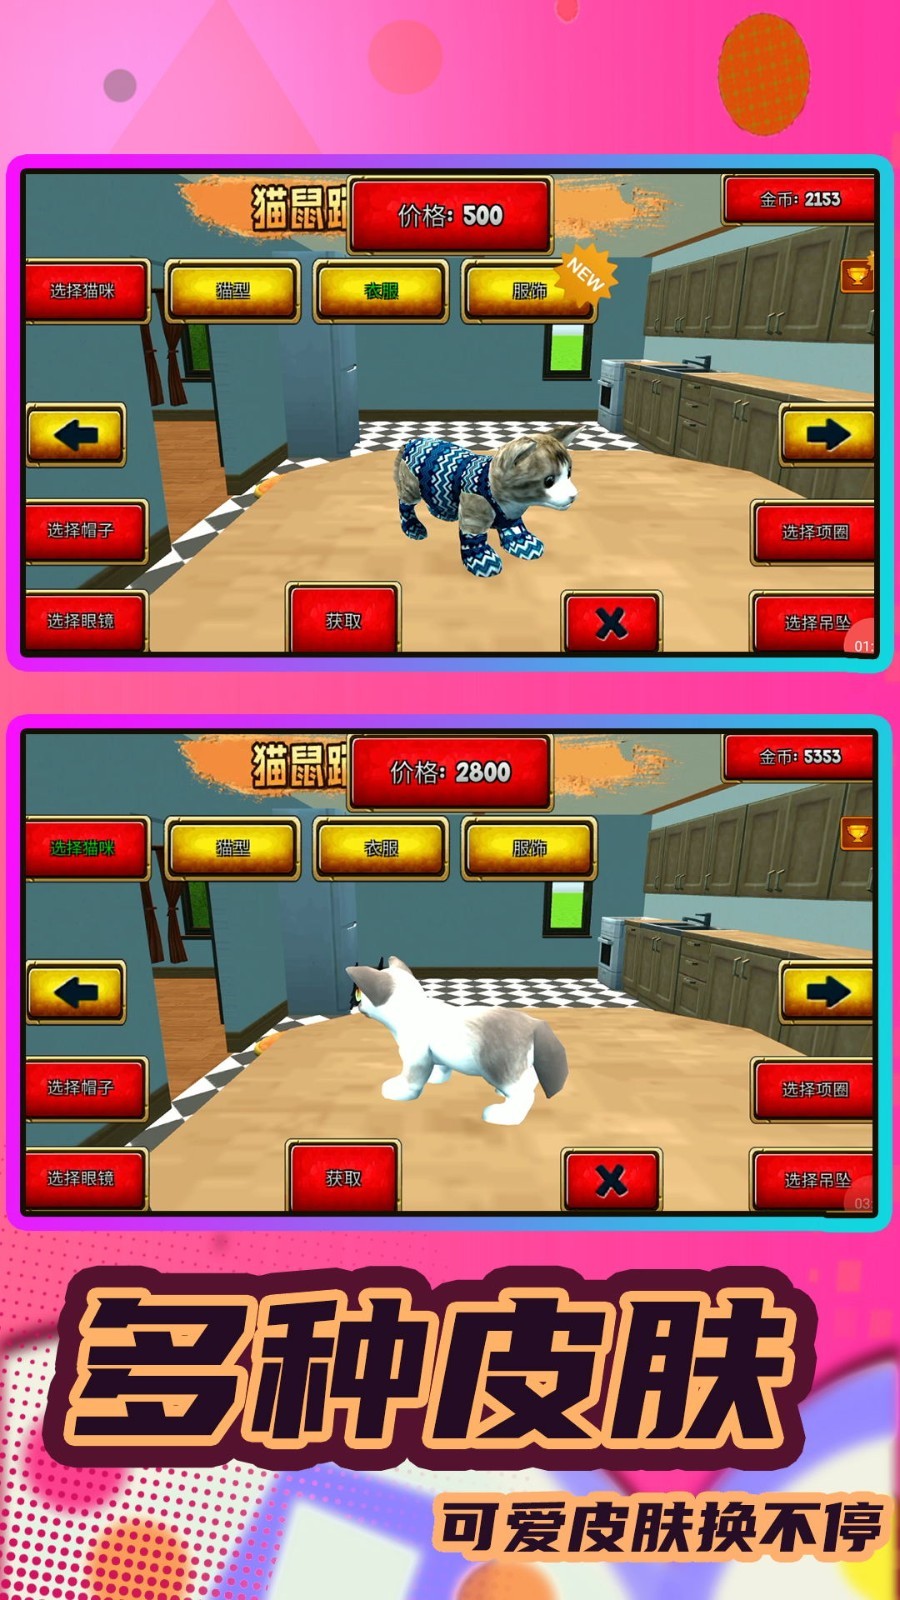 猫鼠跑酷之家安卓版游戏下载图片1